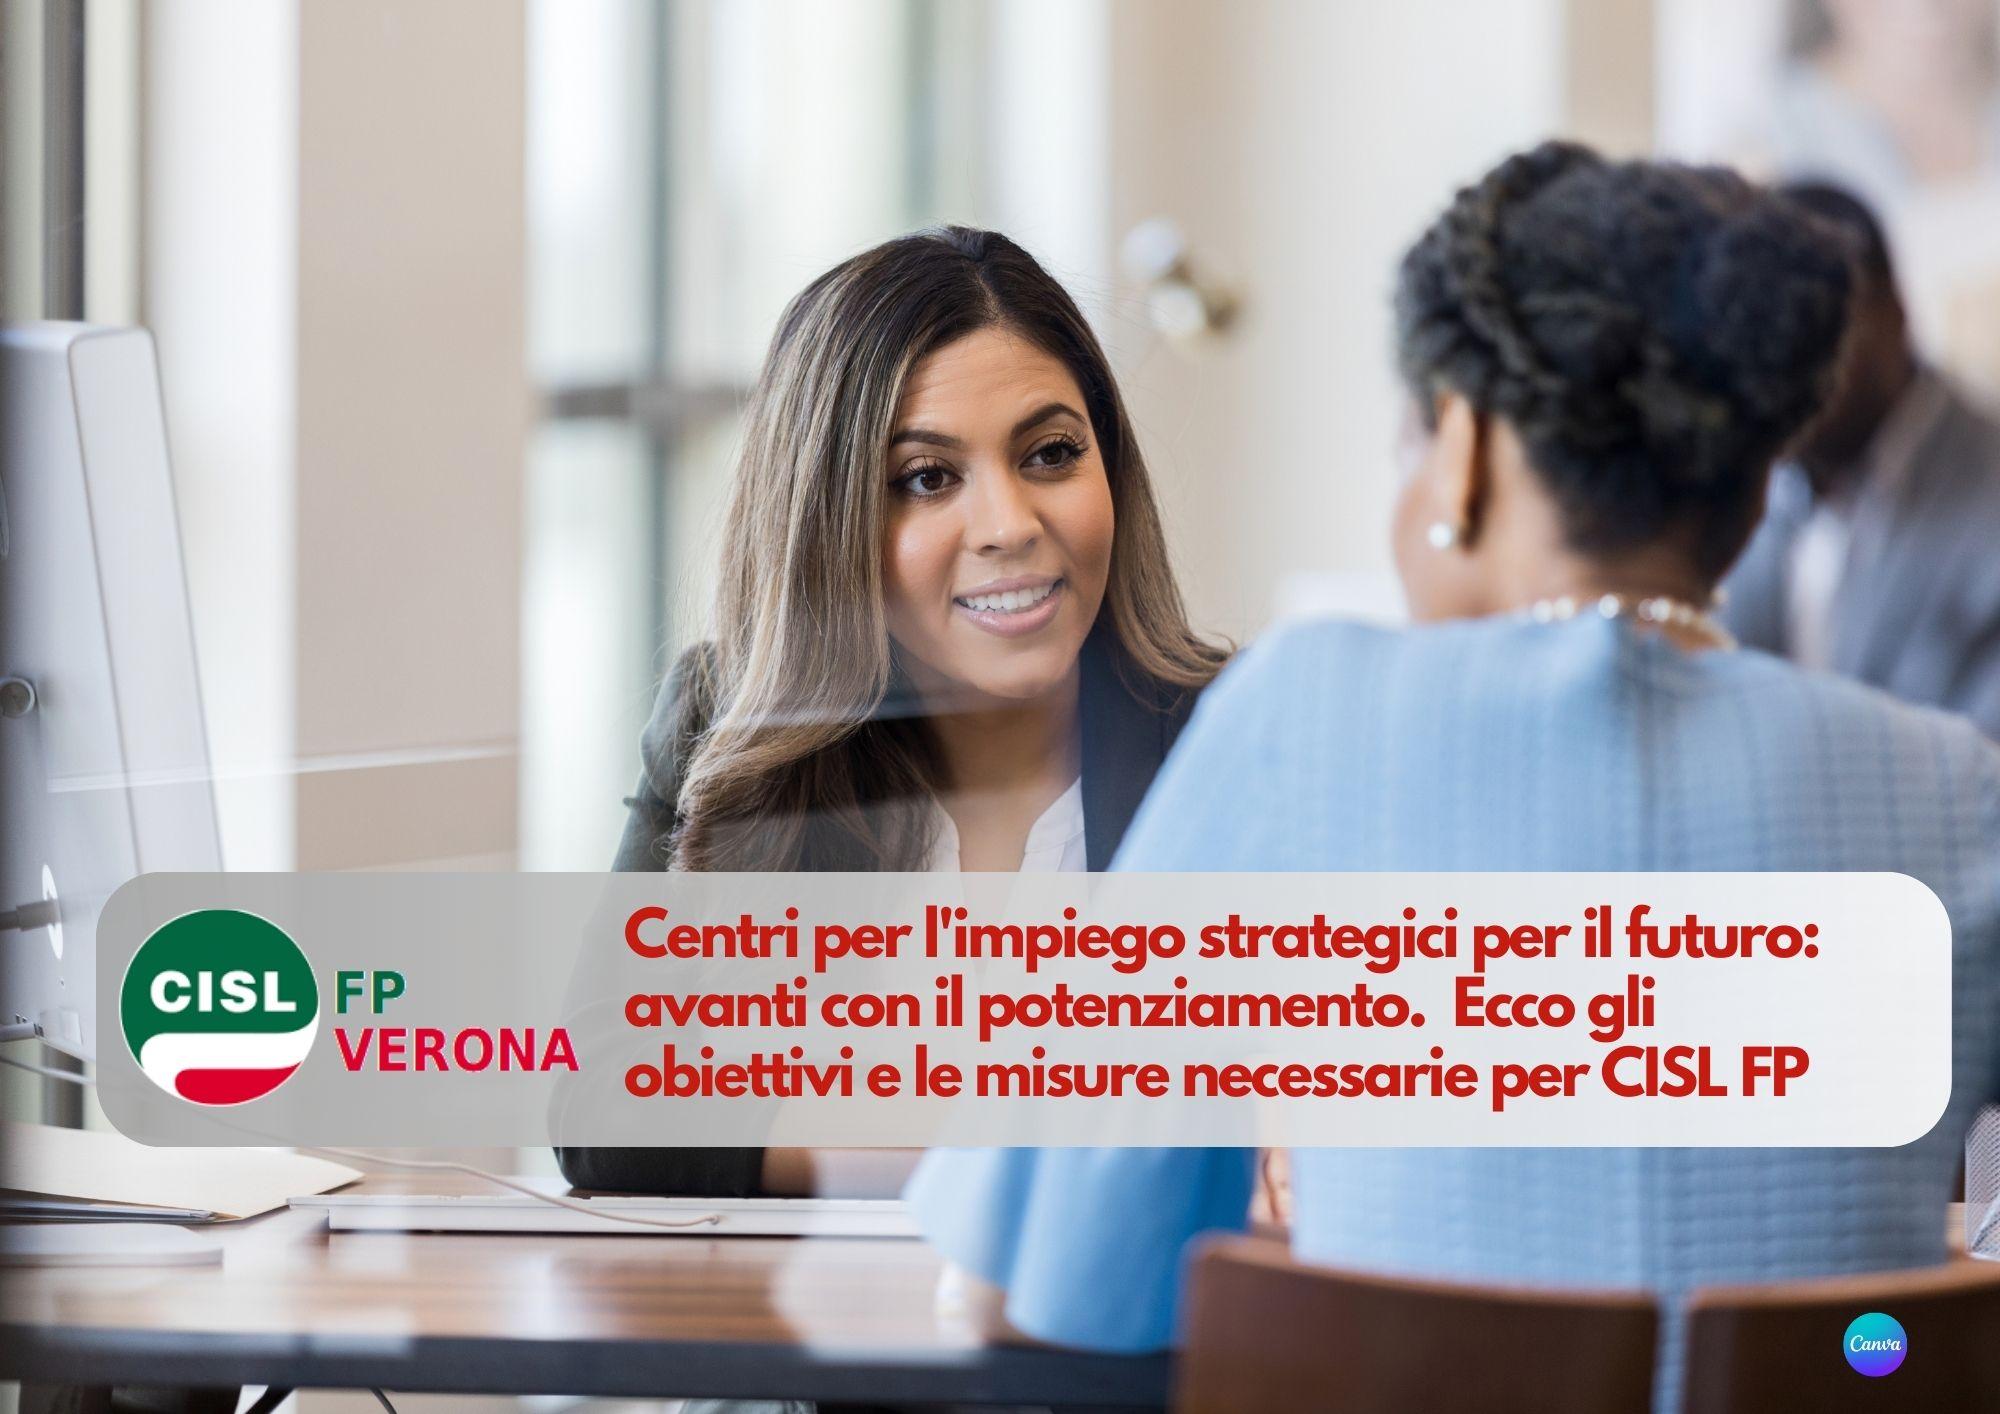 CISL FP Verona. Centri per l'impiego strategici per il futuro: avanti con il potenziamento